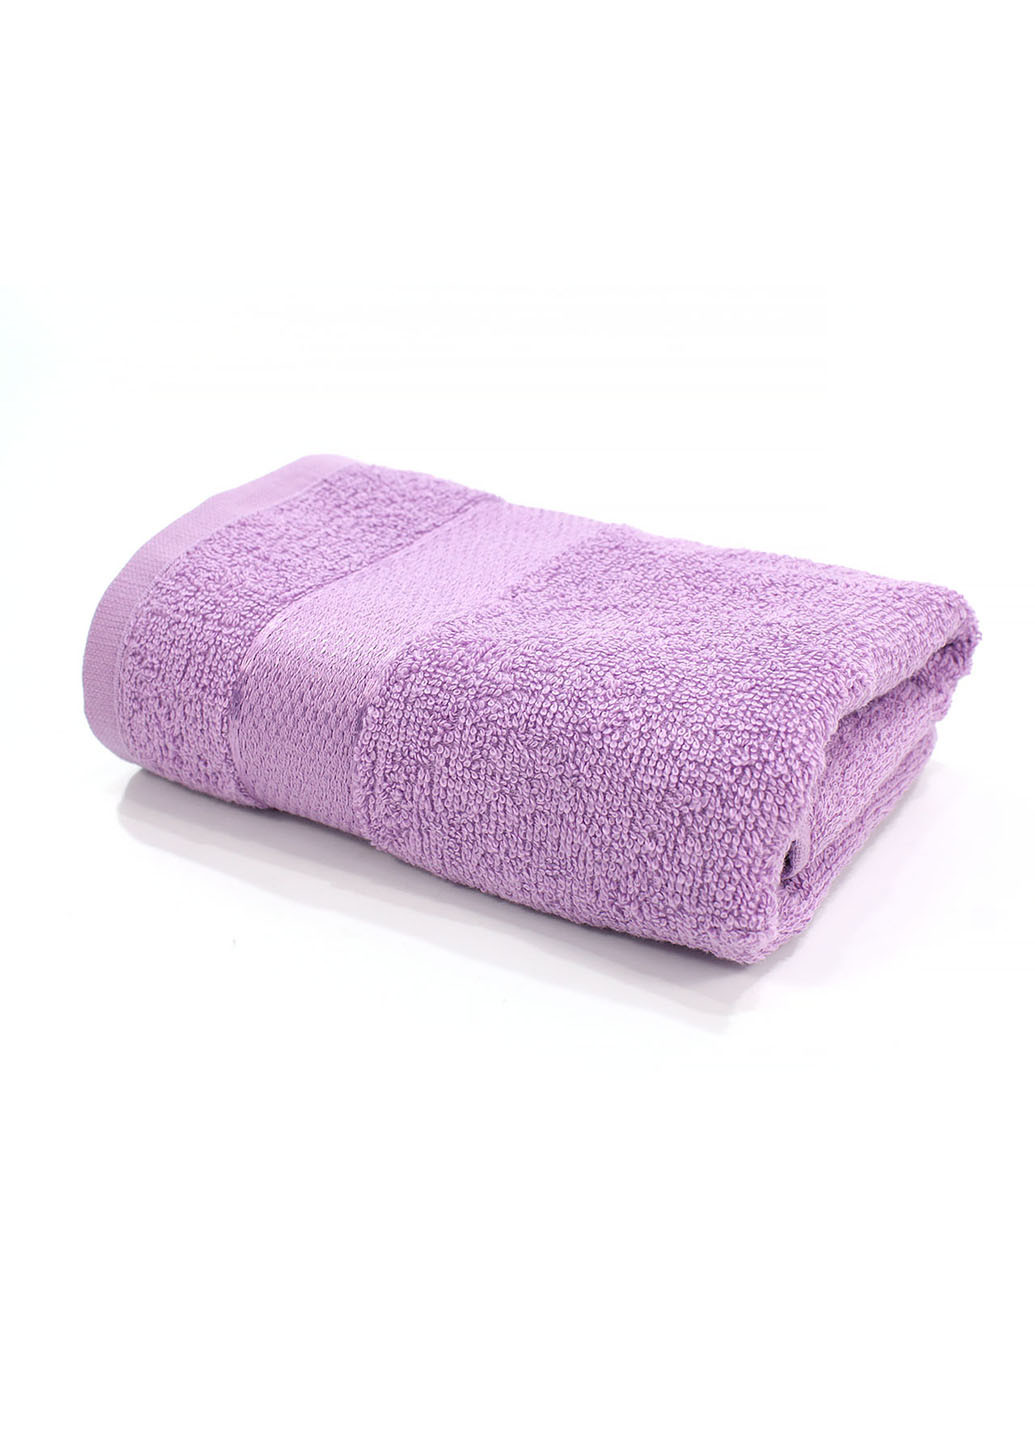 Еней-Плюс полотенце махровое бс0024 50х90 фиолетовый производство - Украина